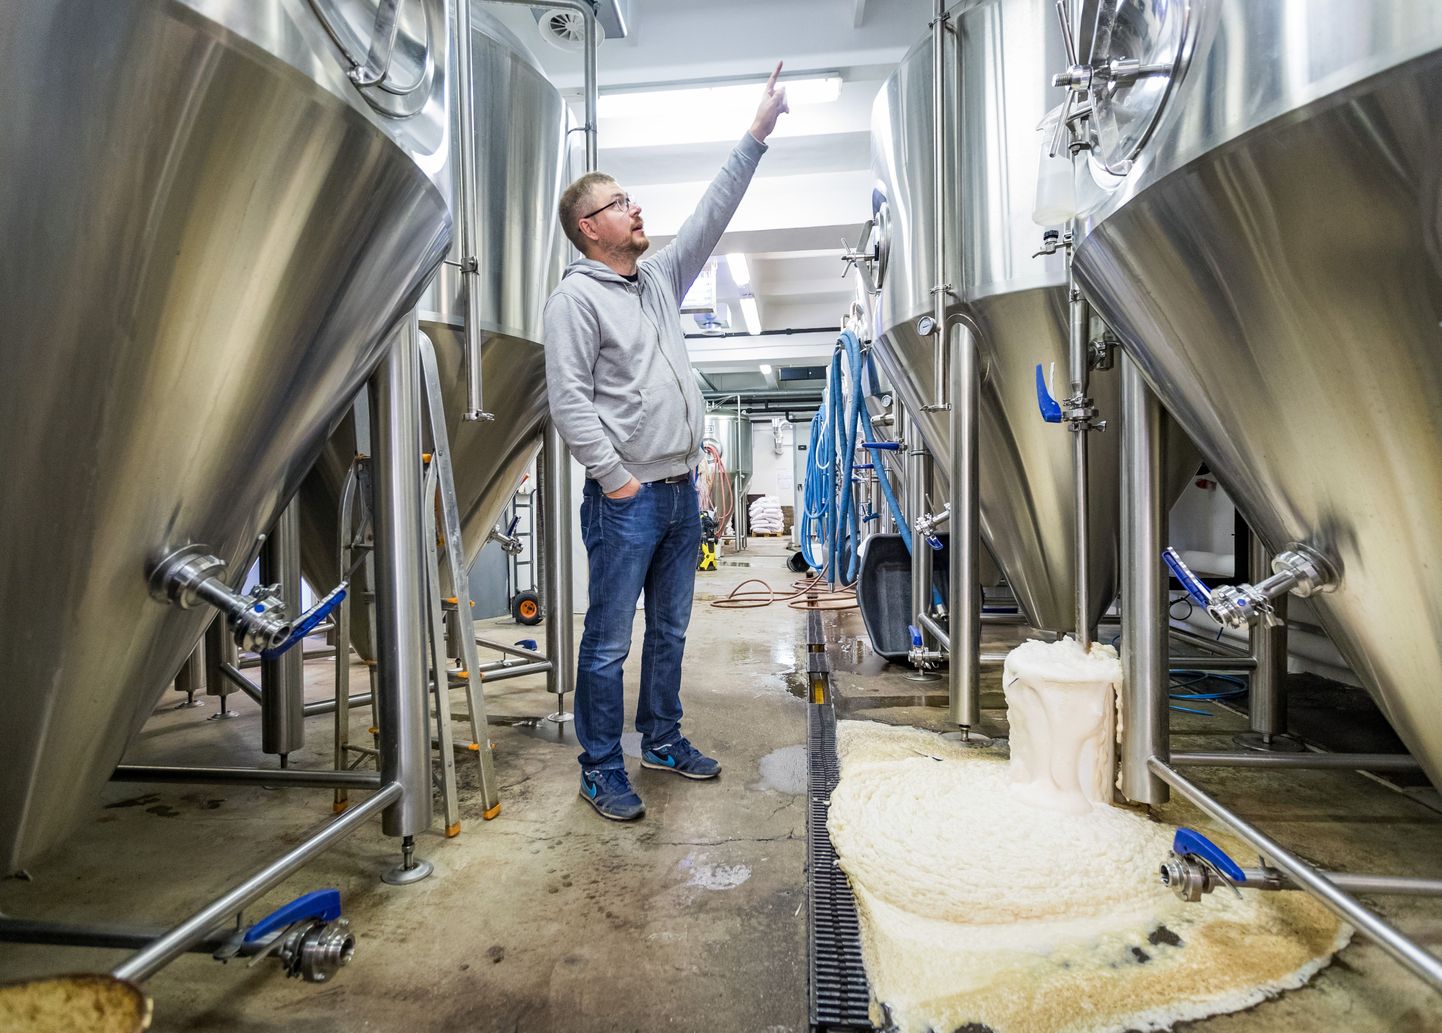 Парка машин пивоварни Põhjala начало не хватать, а потому предприятие покупает новые аргегаты, благодаря которым, мощность производства можно увеличить в четыре раза.